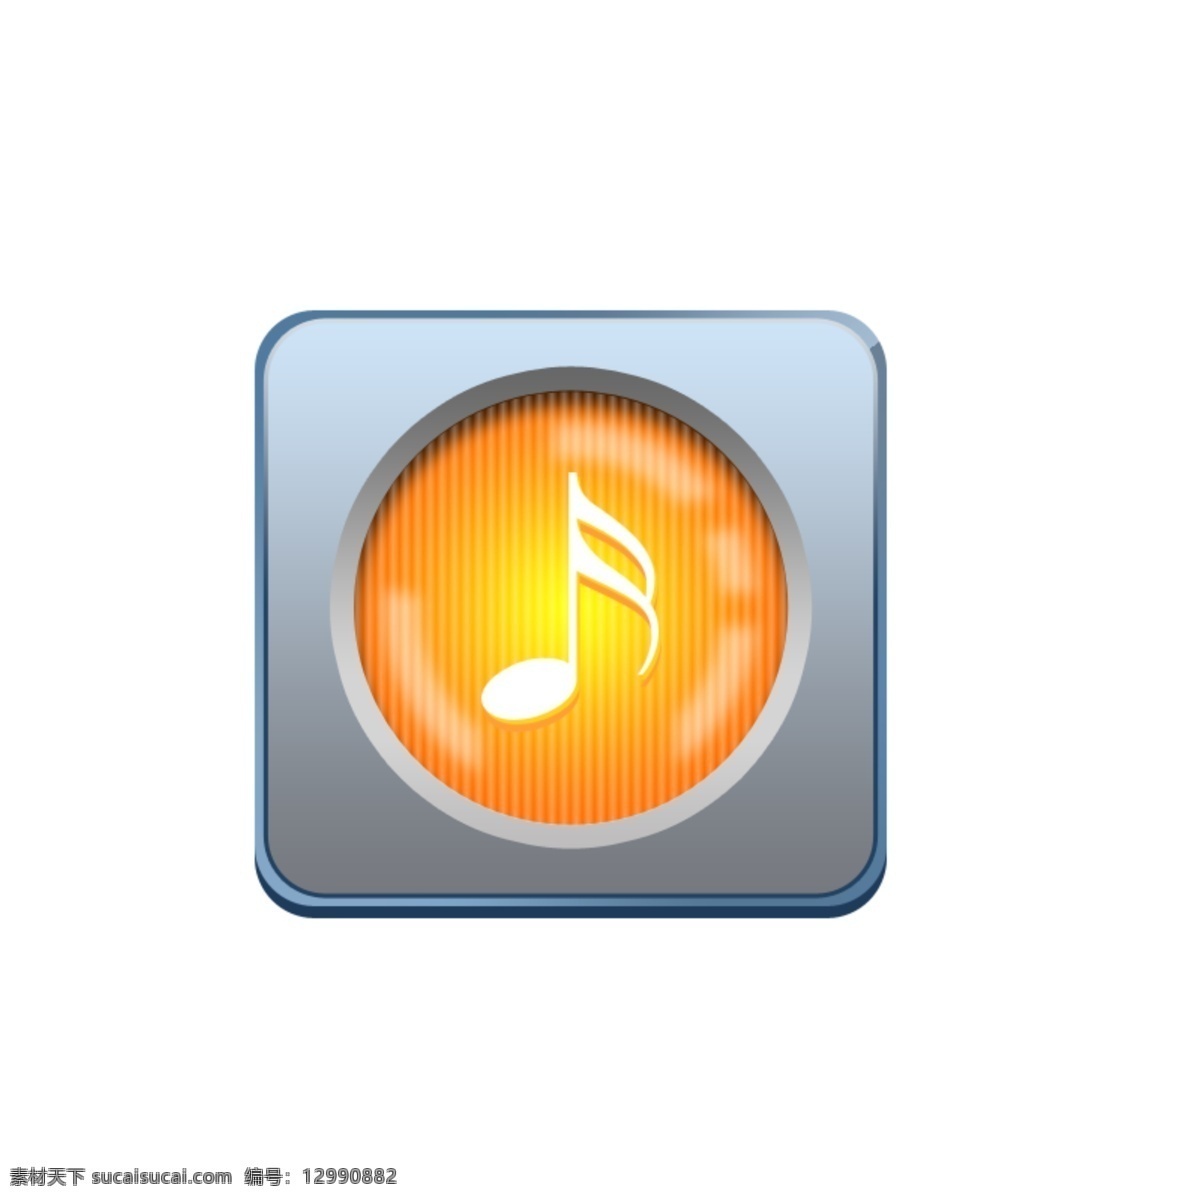 简洁 手机音乐 app 图标 音乐图标 ui设计 app图标 手机图标